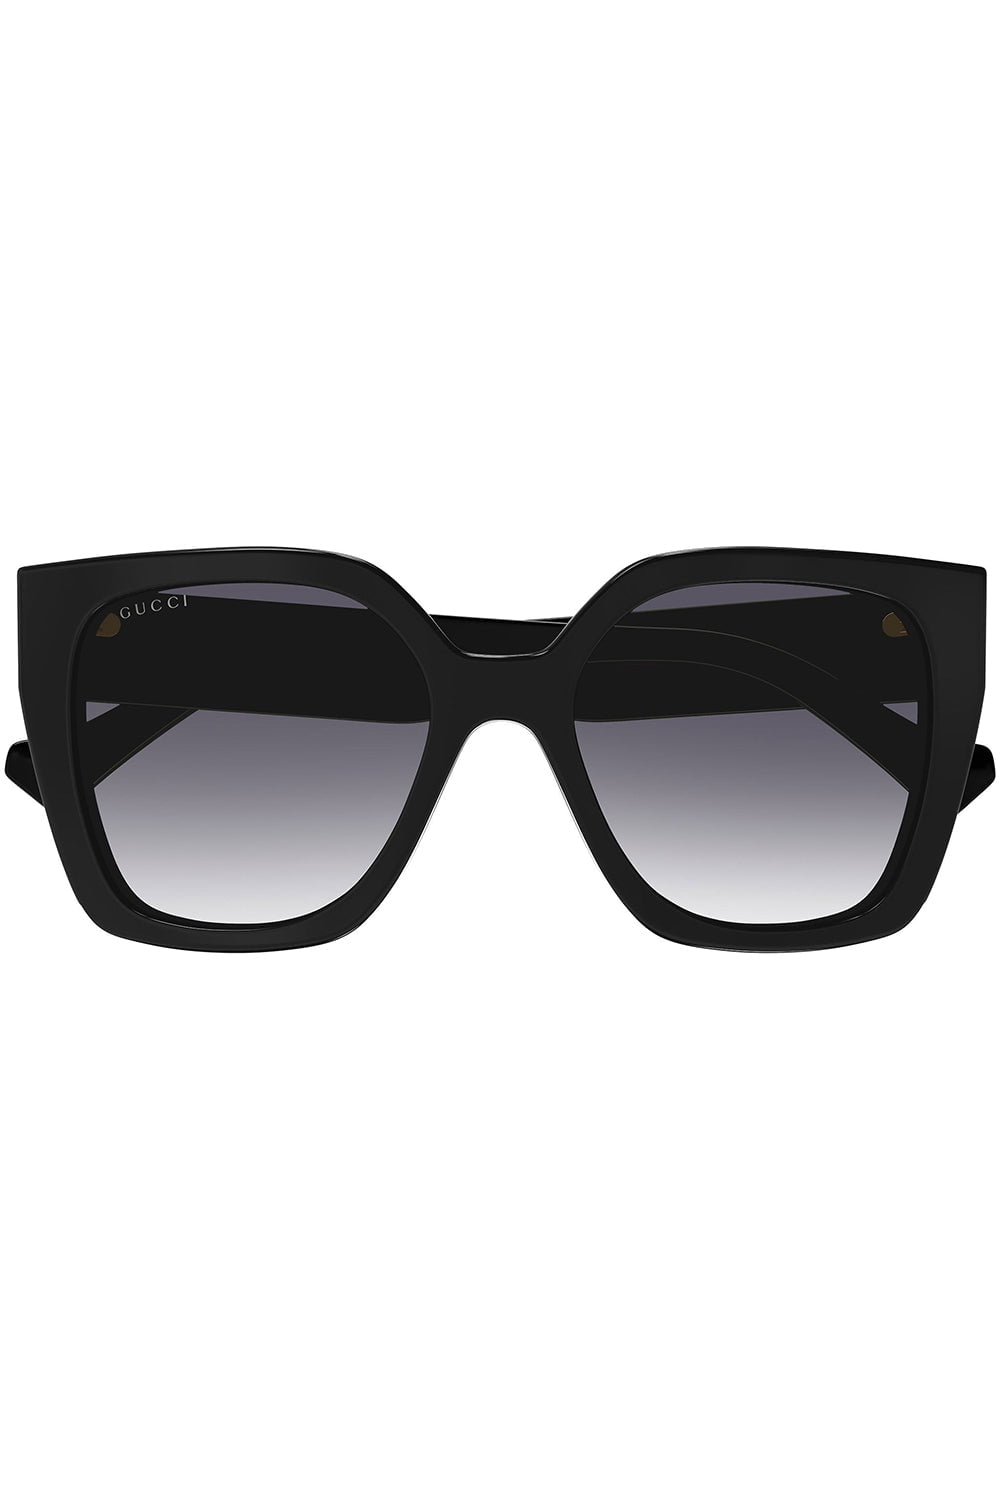 Striped Square Frame Sunglasses ACCESSORIESUNGLASSES GUCCI   